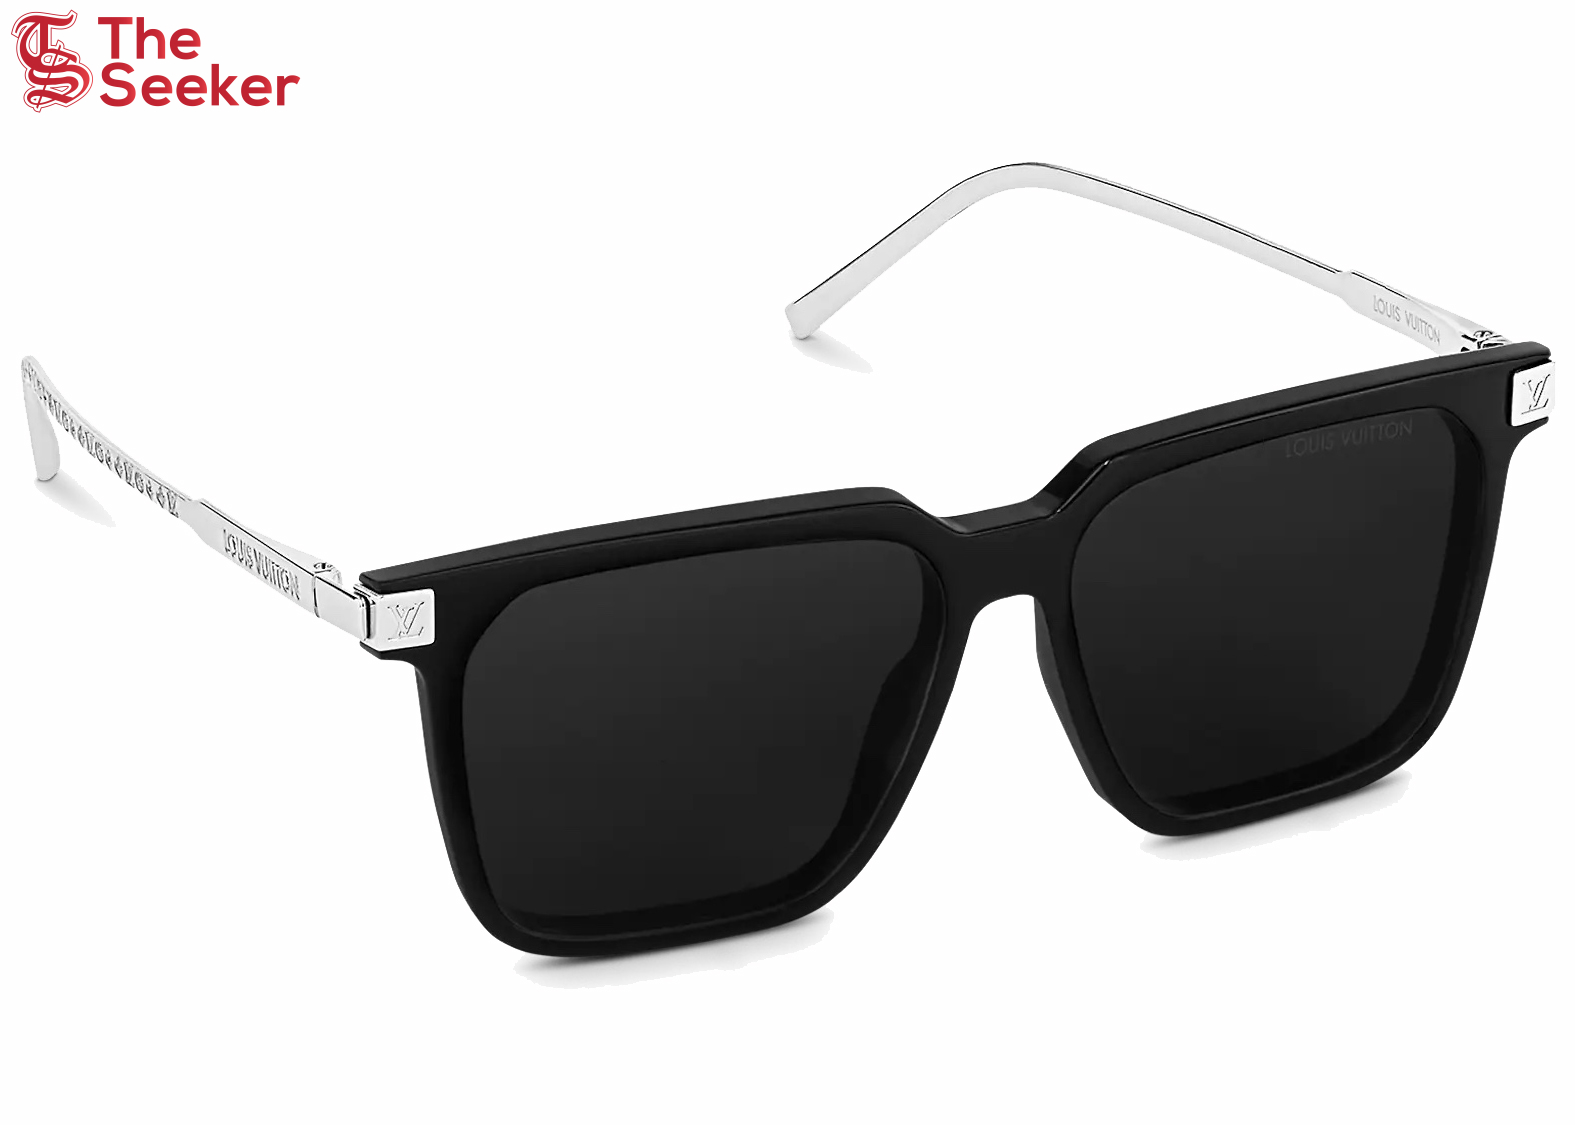 Louis Vuitton LV Rise Square Sunglasses Black/Silver (Z1667W/E)